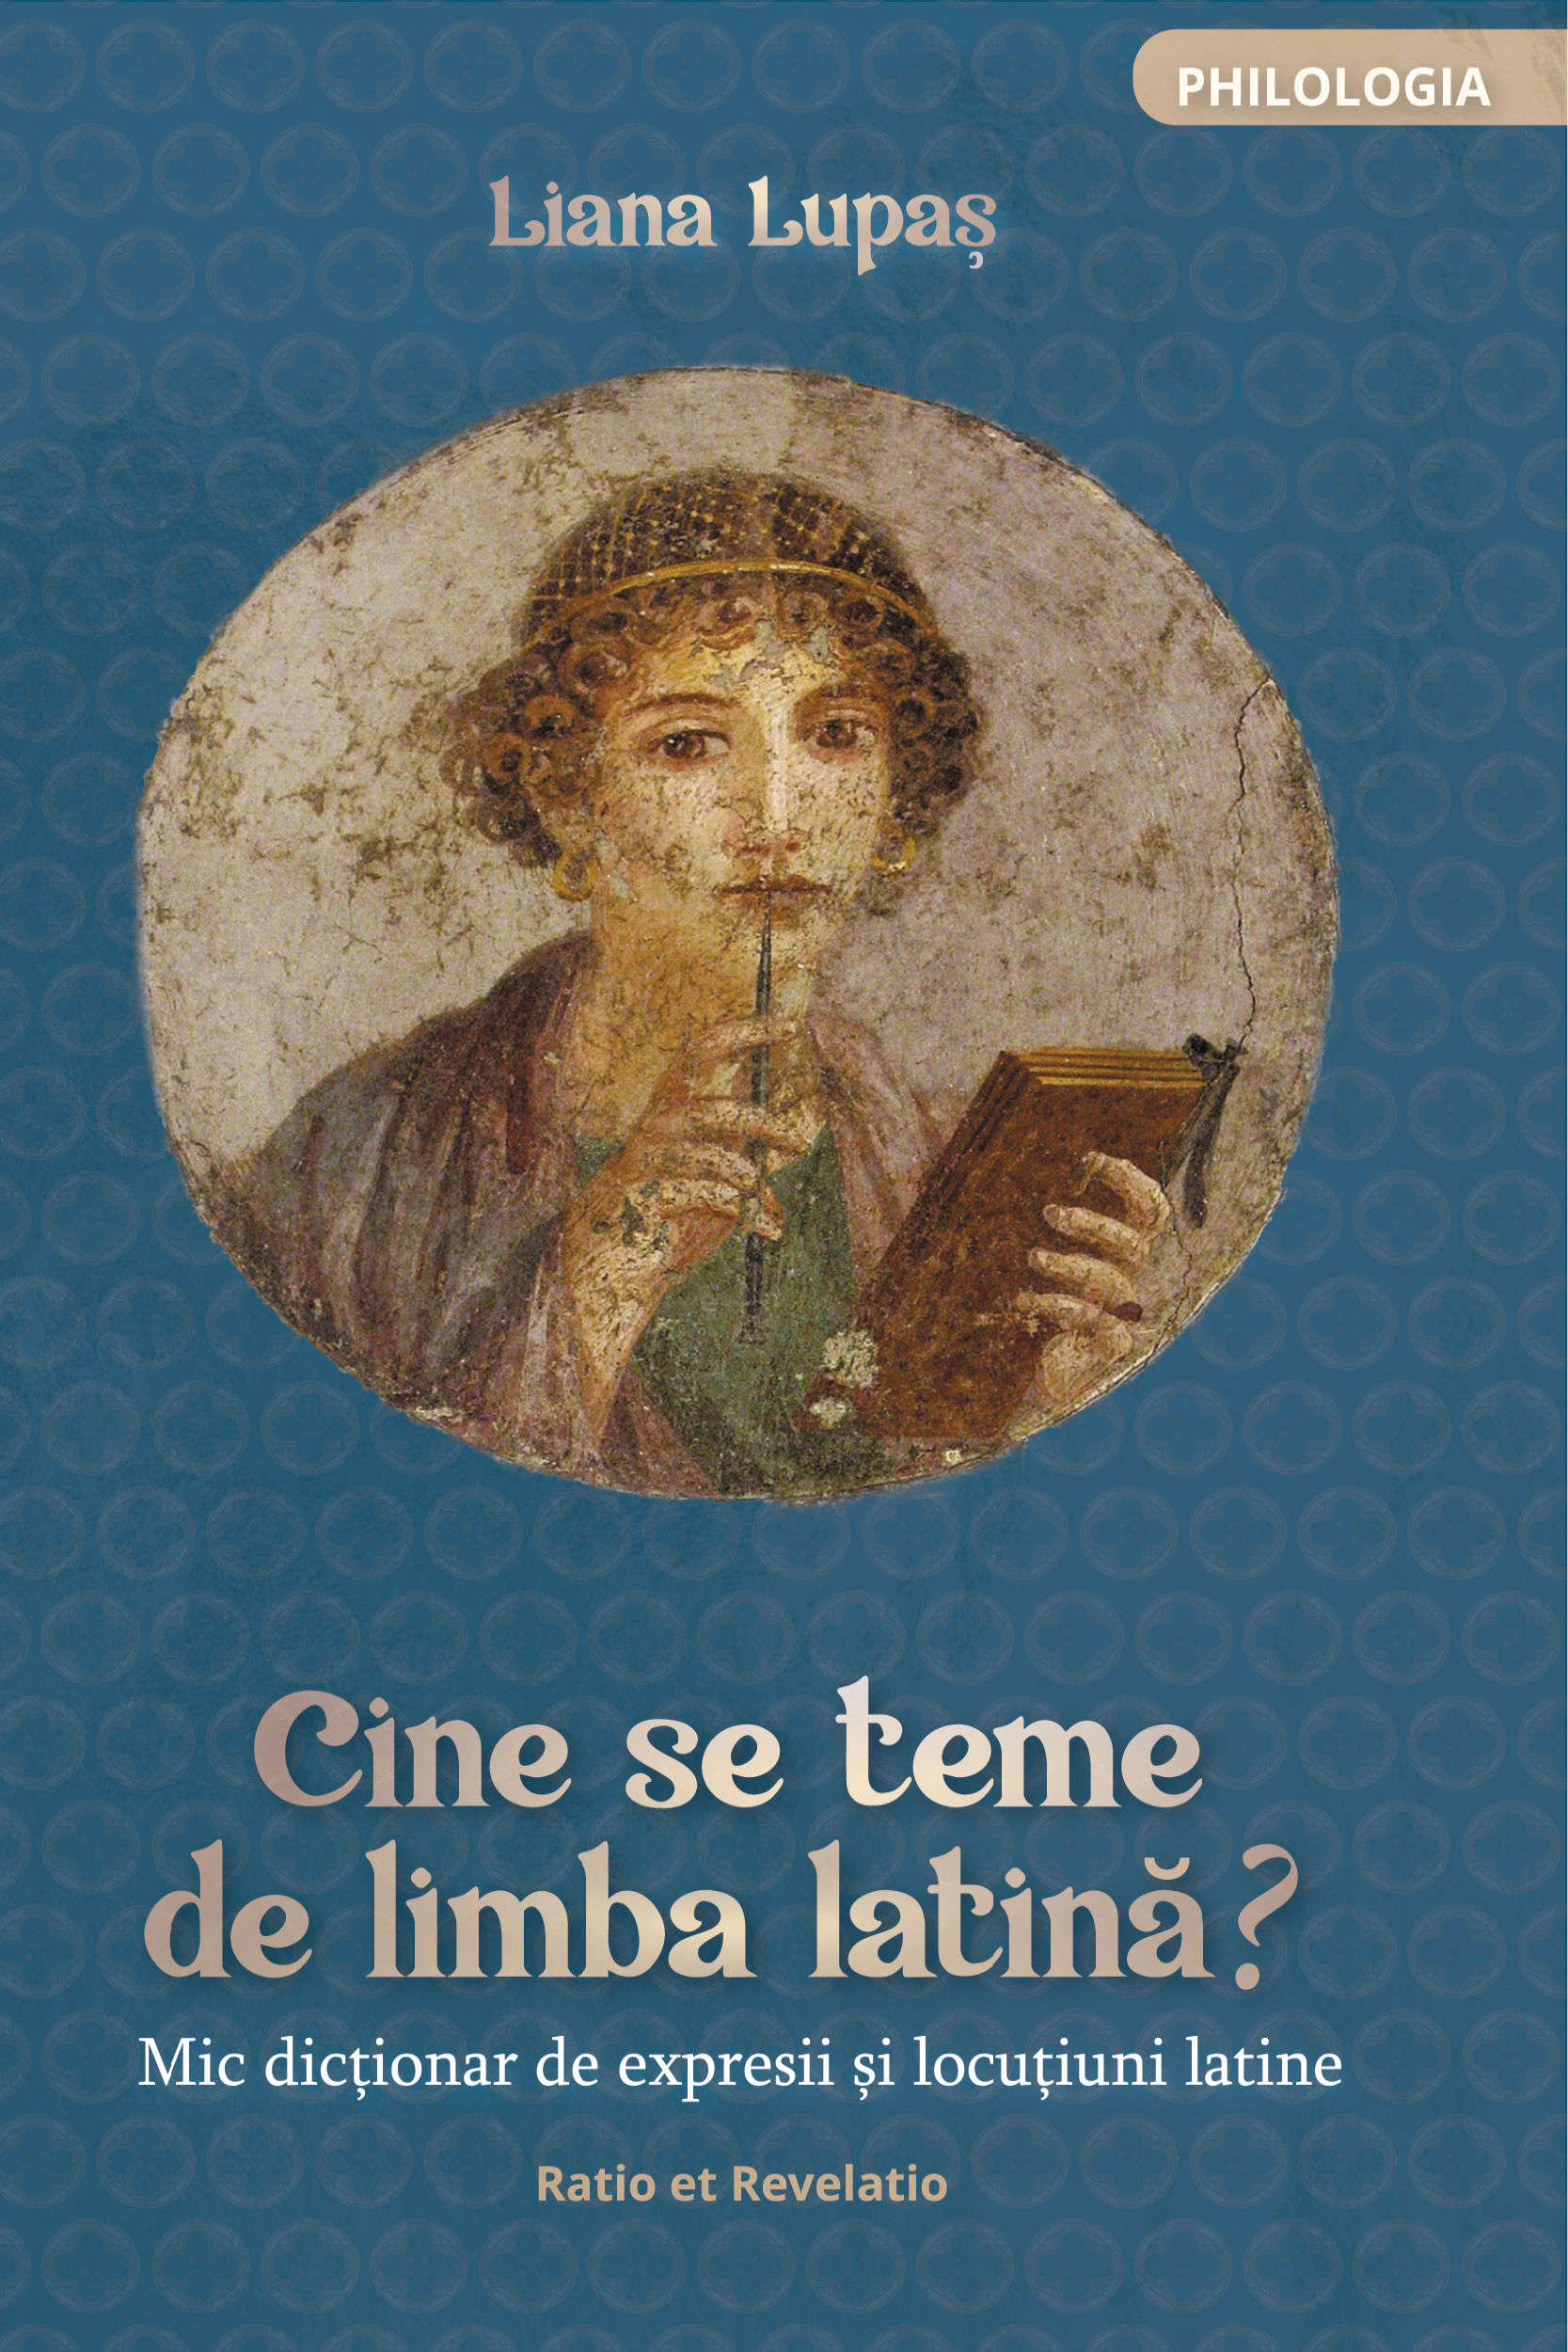 Cine se teme de limba latină? Mic dicționar de expresii și locuțiuni latine